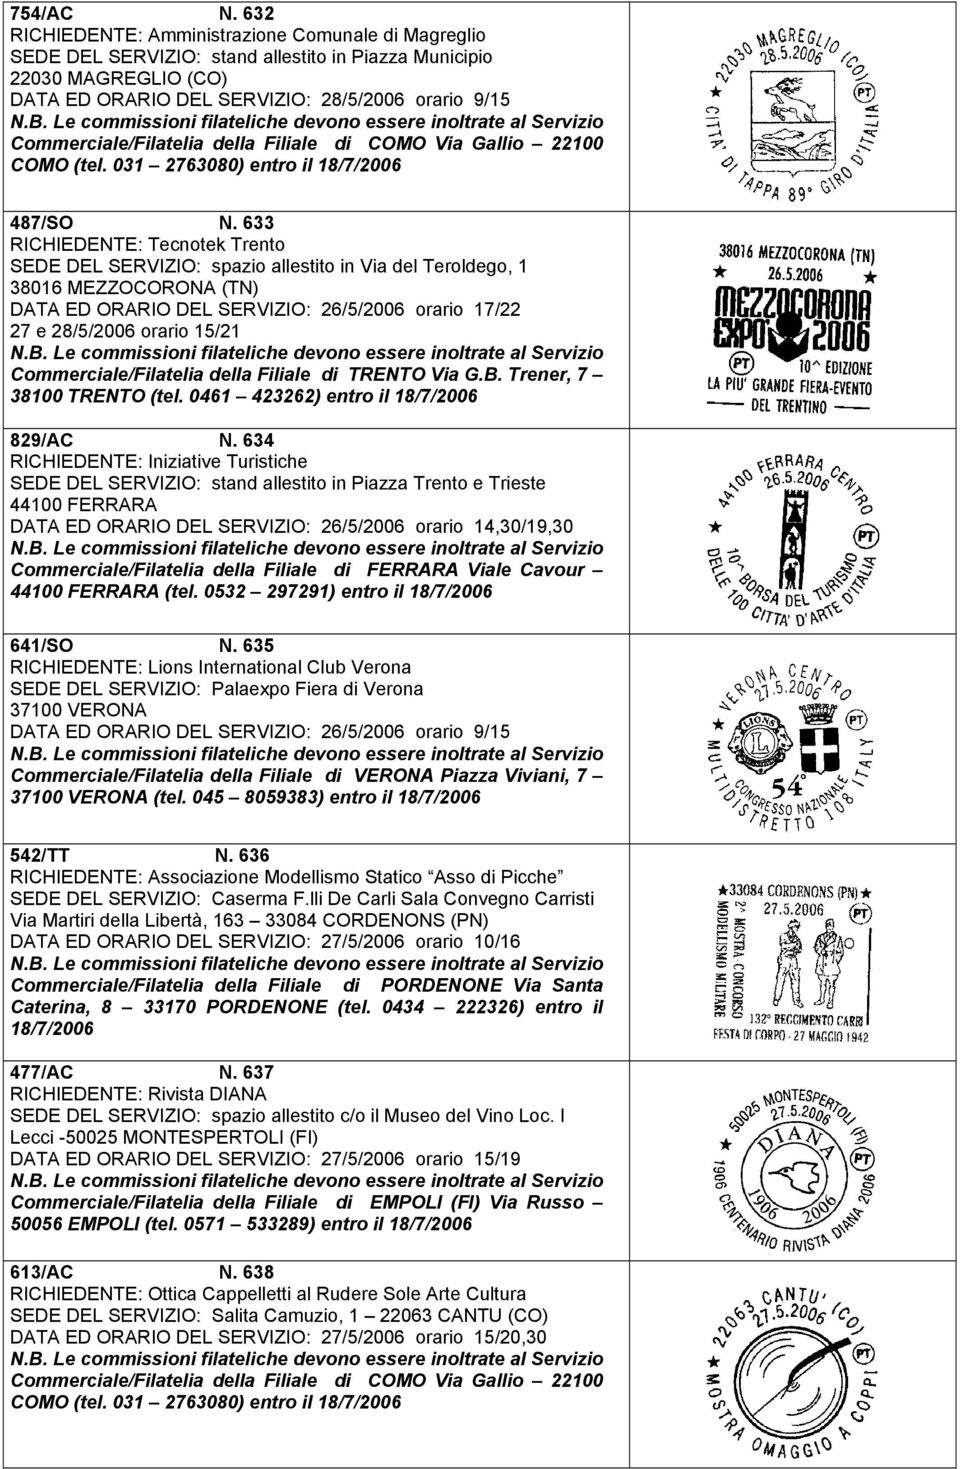 Commerciale/Filatelia della Filiale di COMO Via Gallio 22100 COMO (tel. 031 2763080) entro il 487/SO N.